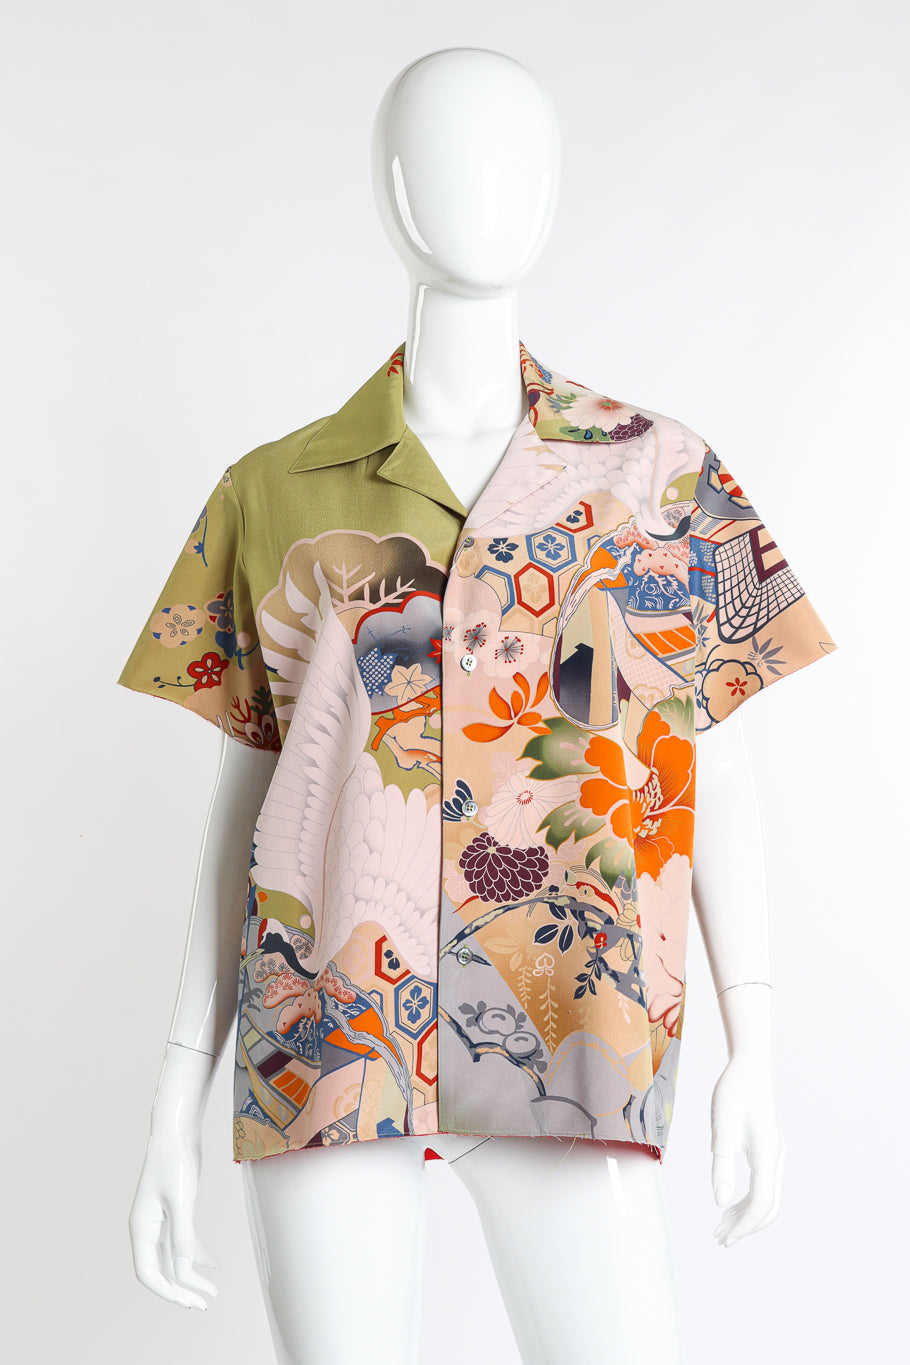 Maison Margiela 2019 S/S Japanese Crane Shirt front on mannequin @recess la